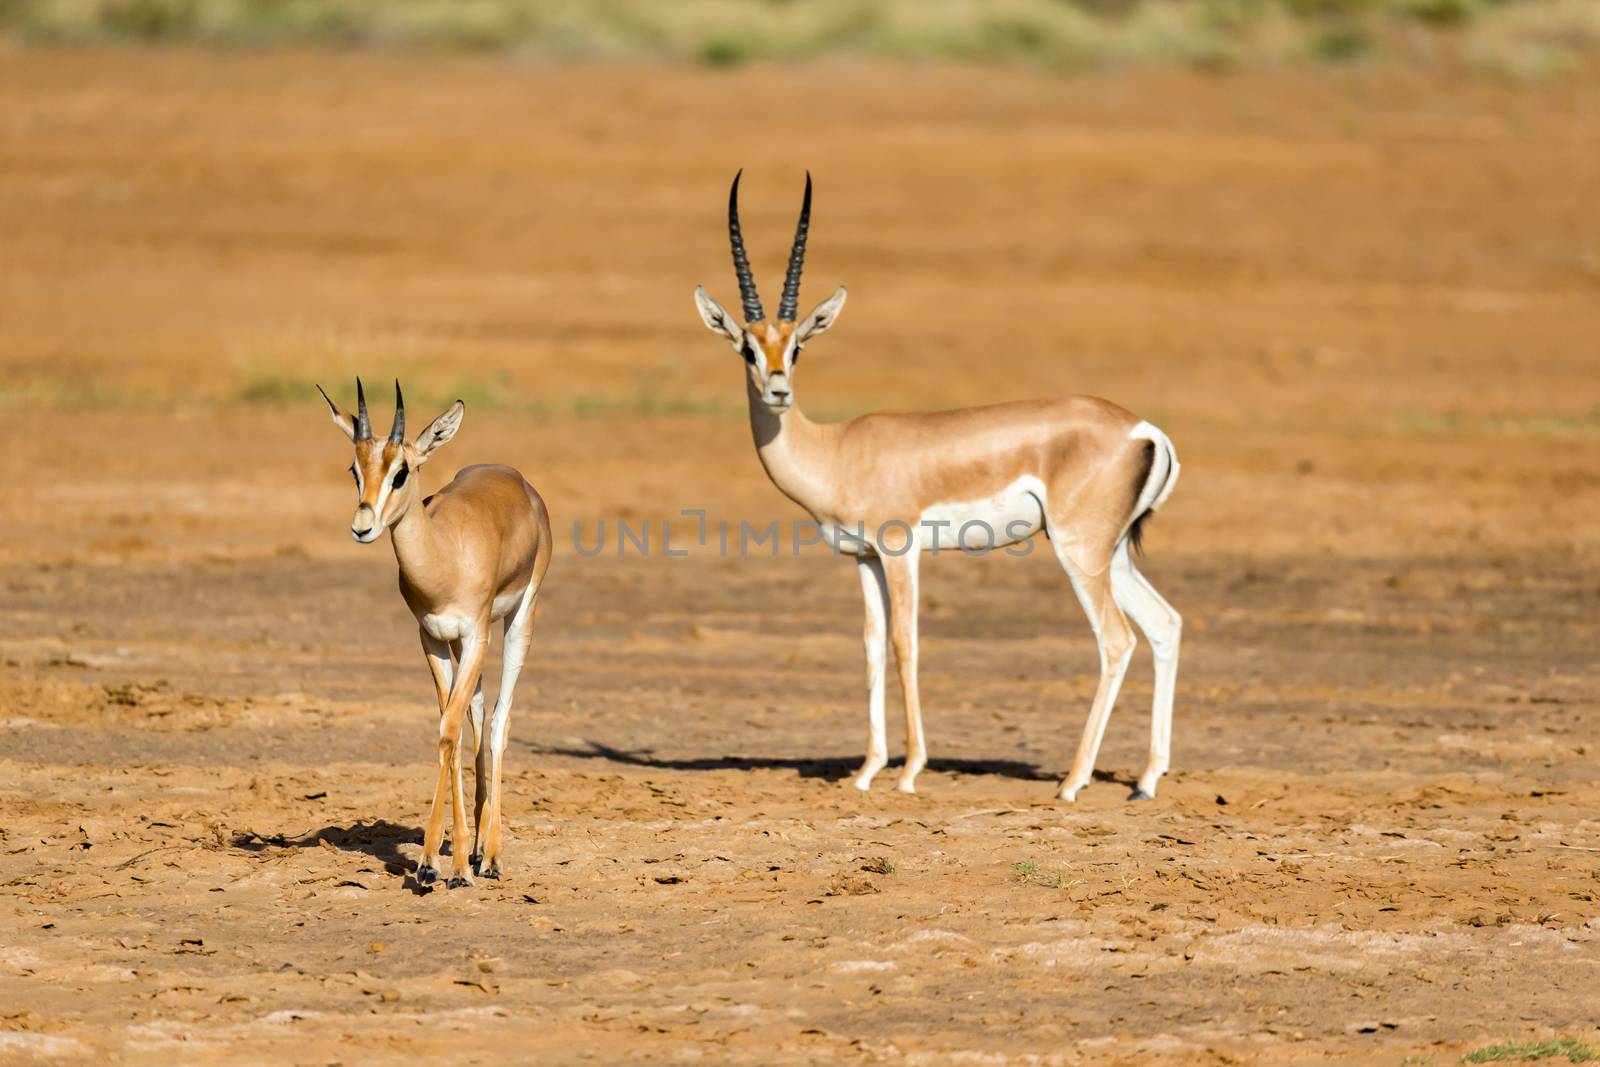 Grant Gazelle in the savannah of Kenya by 25ehaag6